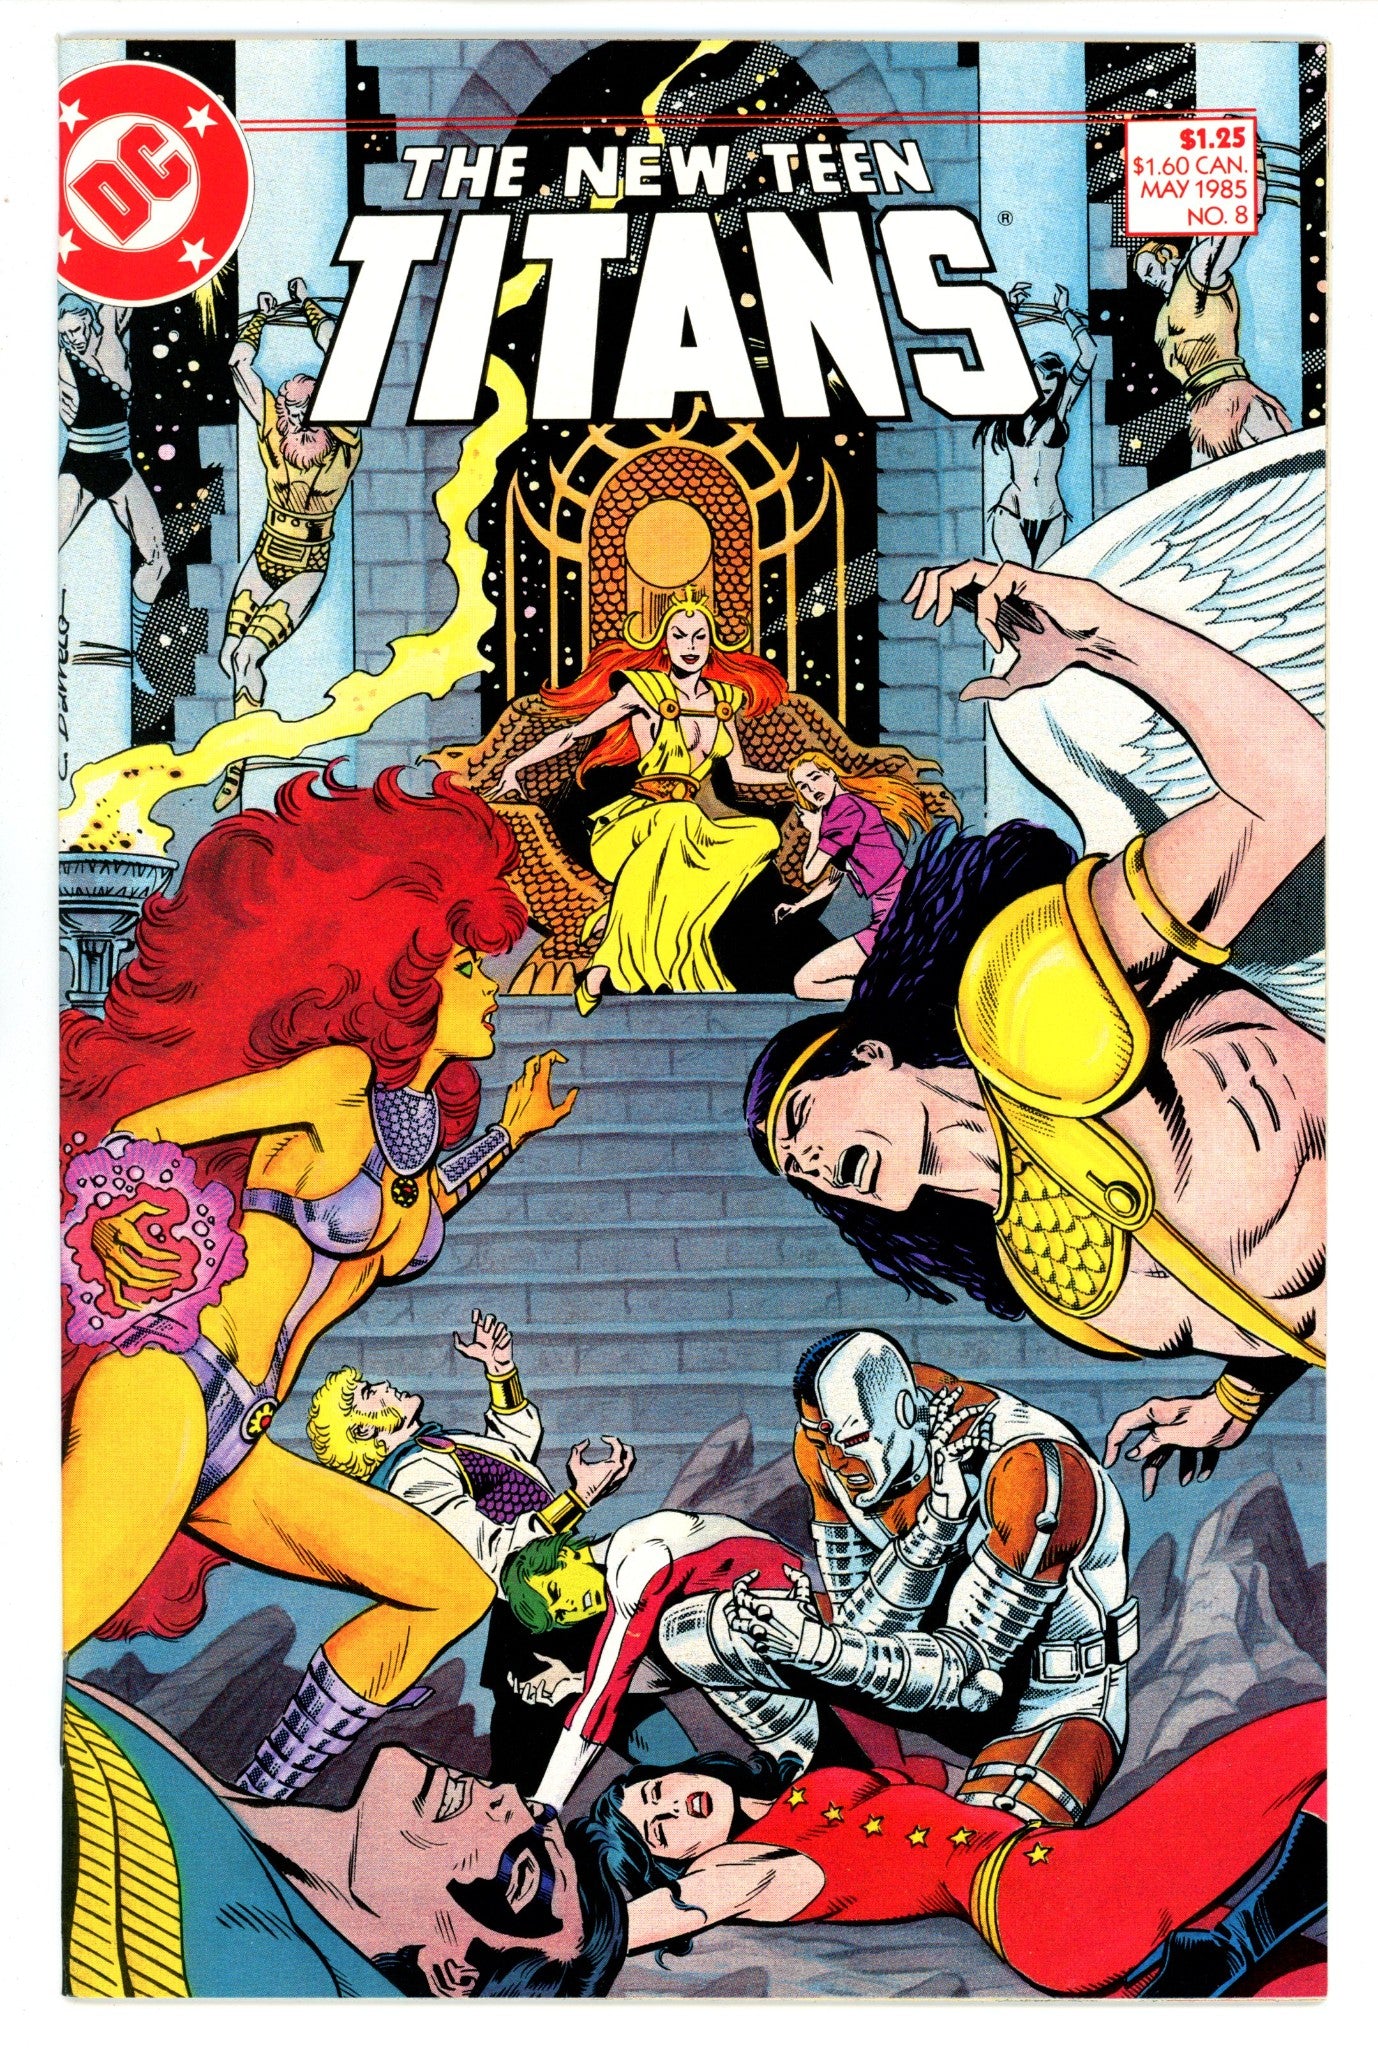 The New Teen Titans Vol 2 8 High Grade (1985) 